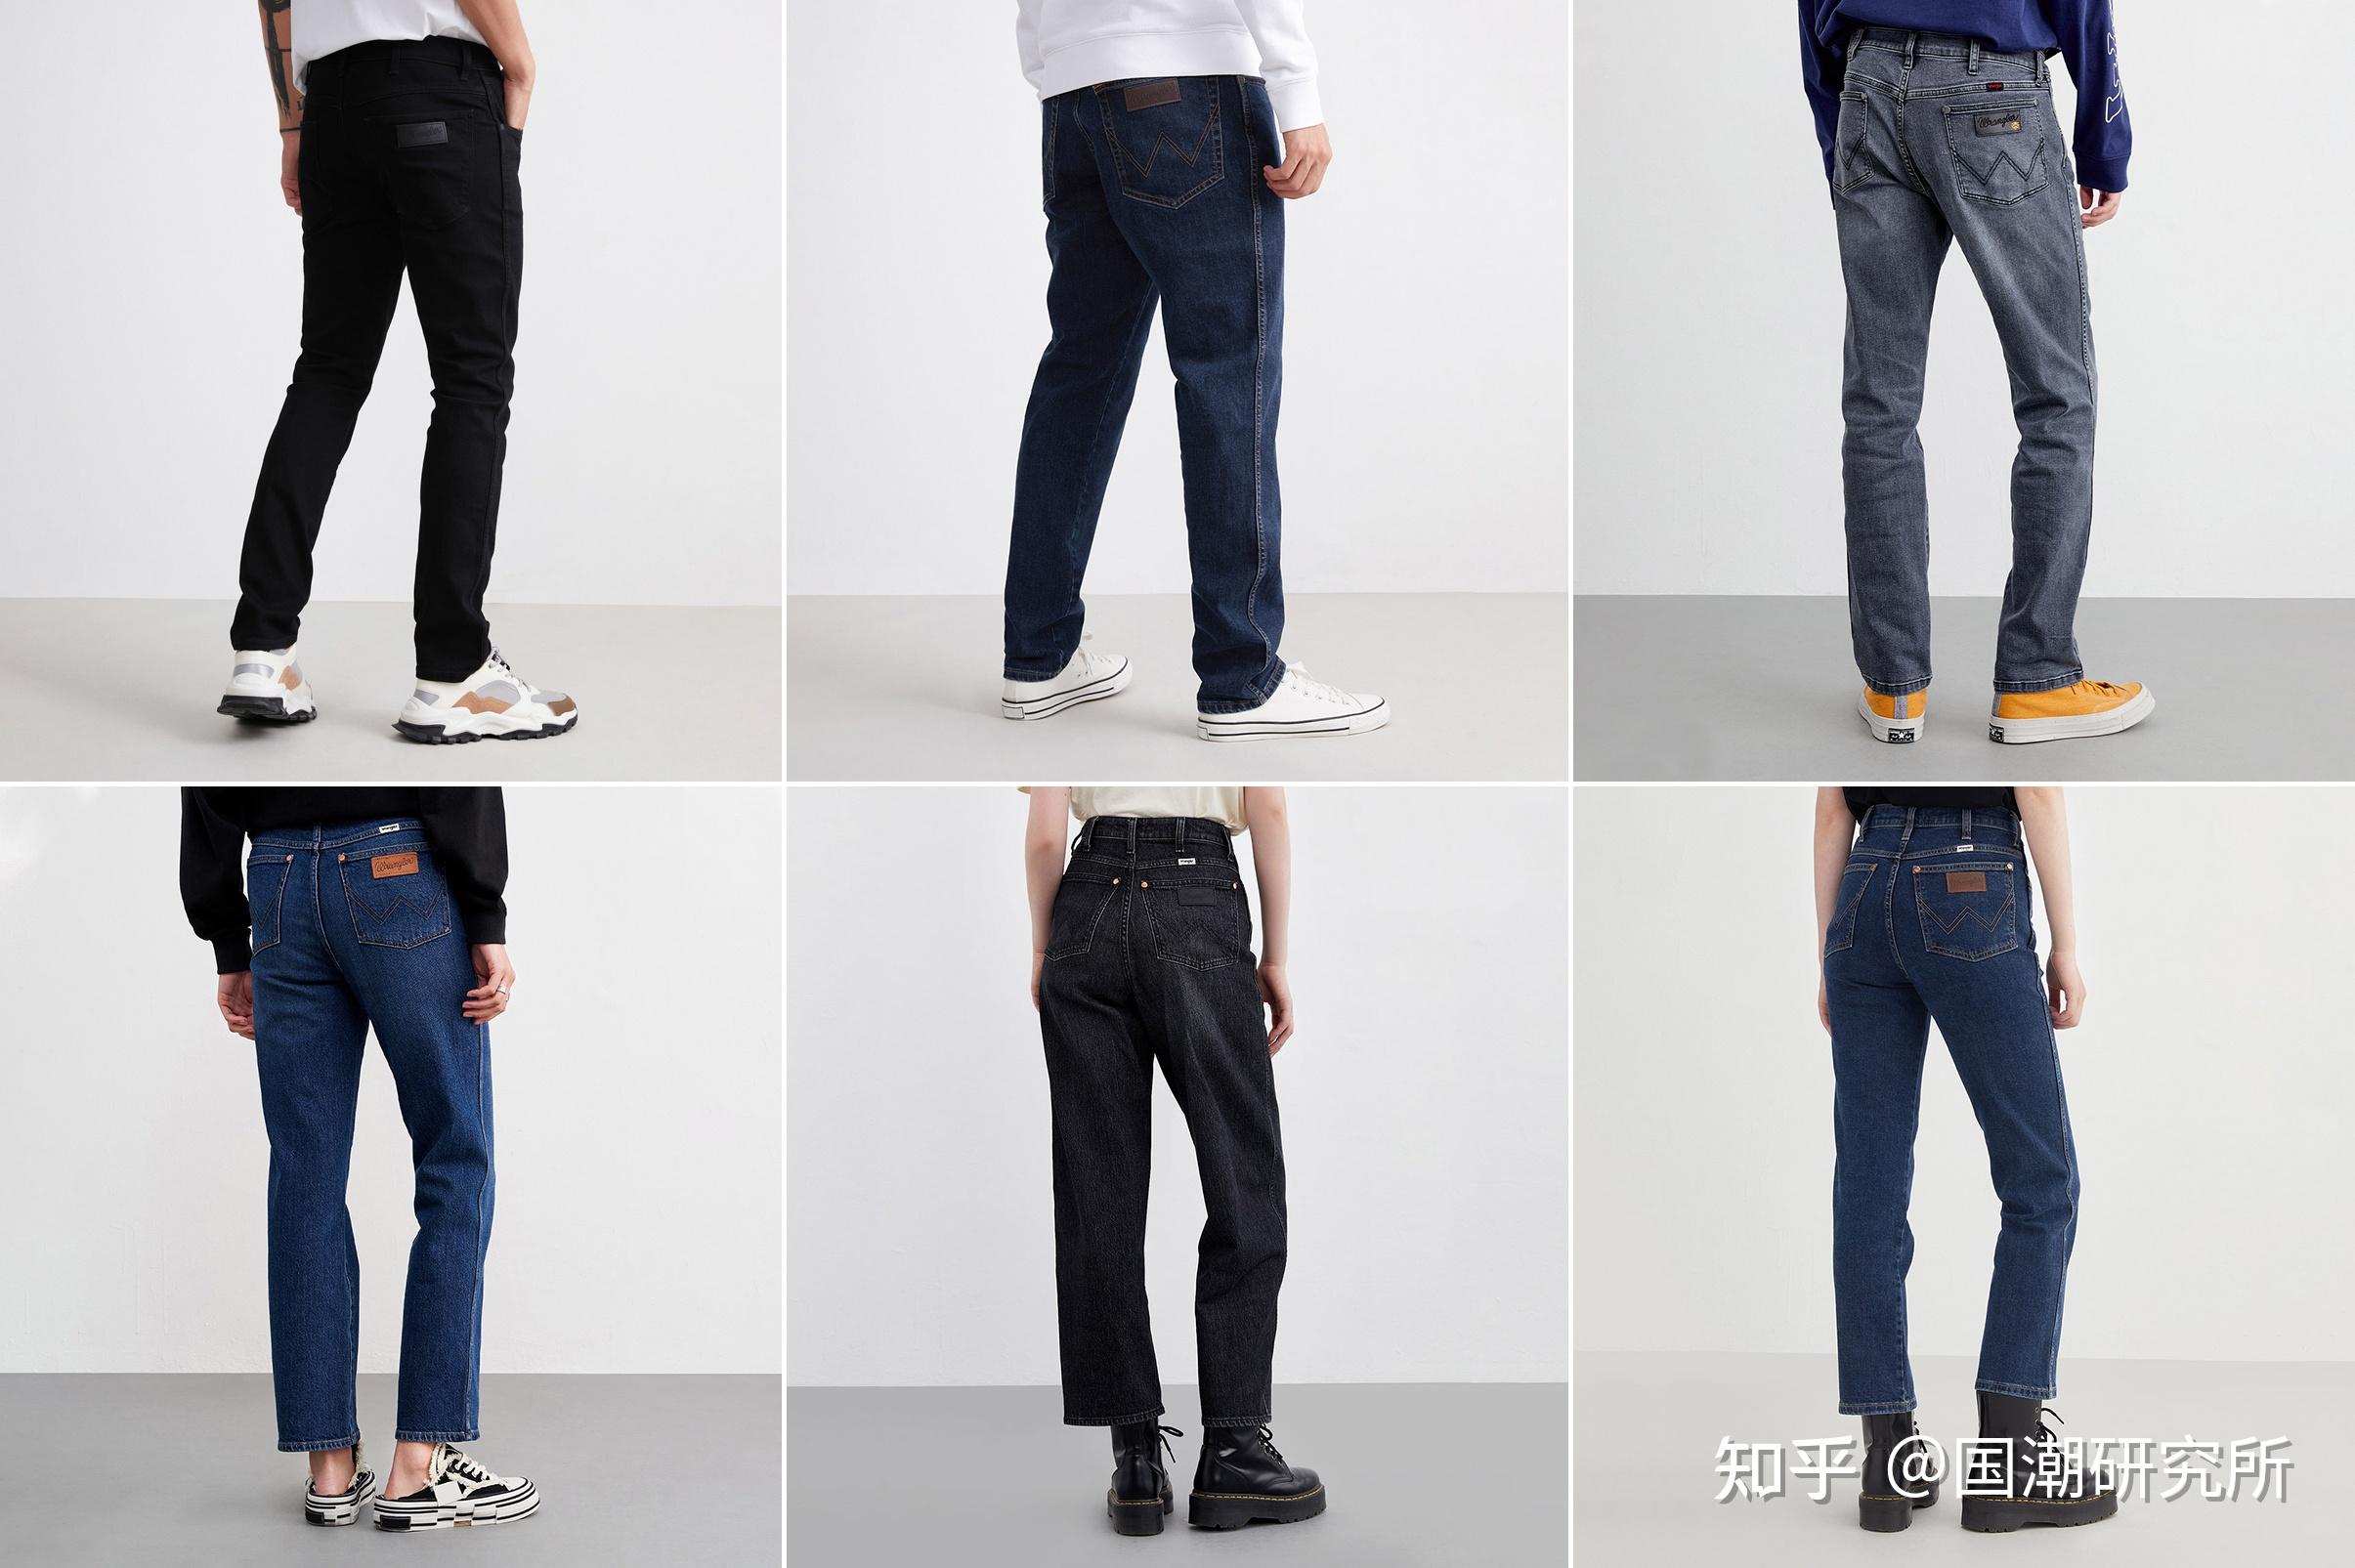 品质不输给Levi's!盘点日本10大顶级牛仔裤品牌